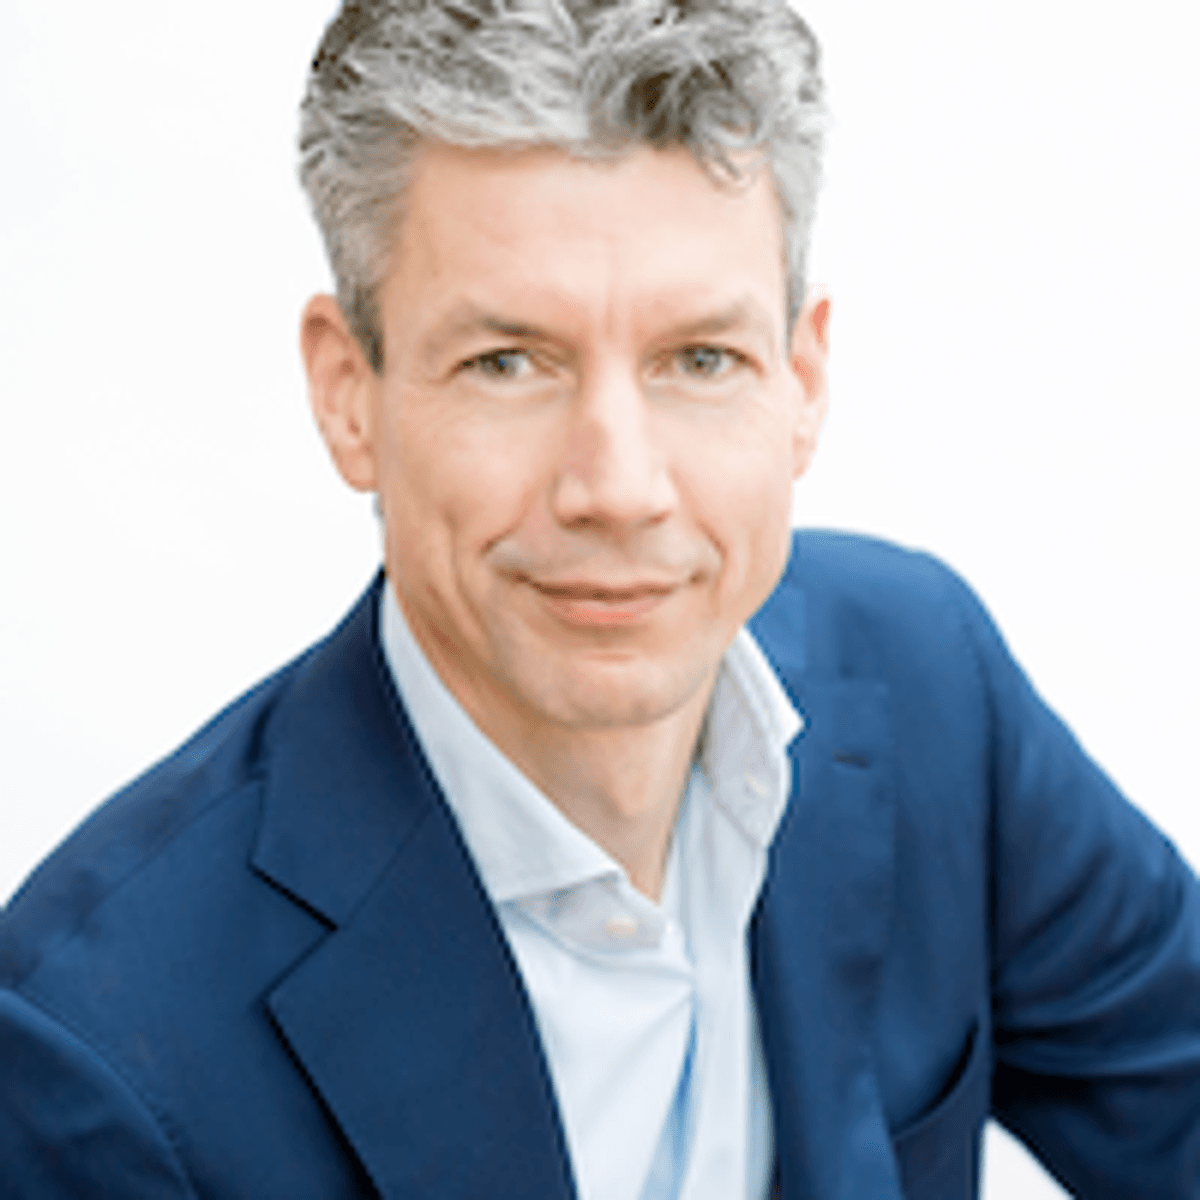 Jeroen Dubel benoemd partner transport en vervoer bij PA Consulting Nederland image